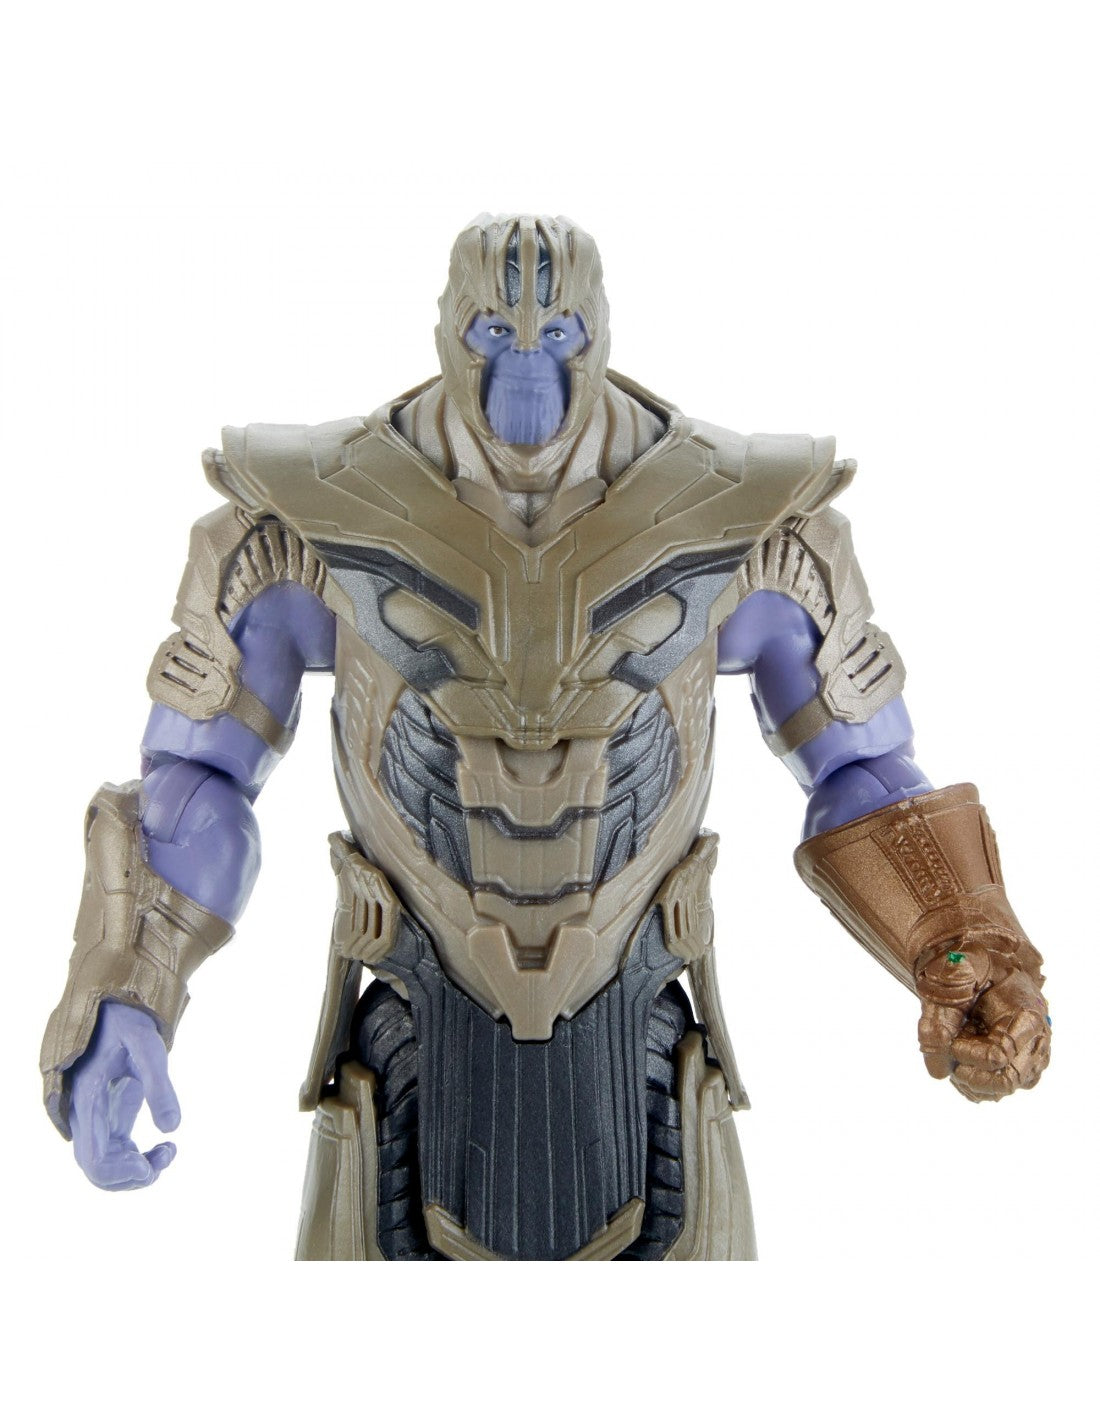 Hasbro Marvel Avengers: Endgame Warrior Thanos Deluxe Figure